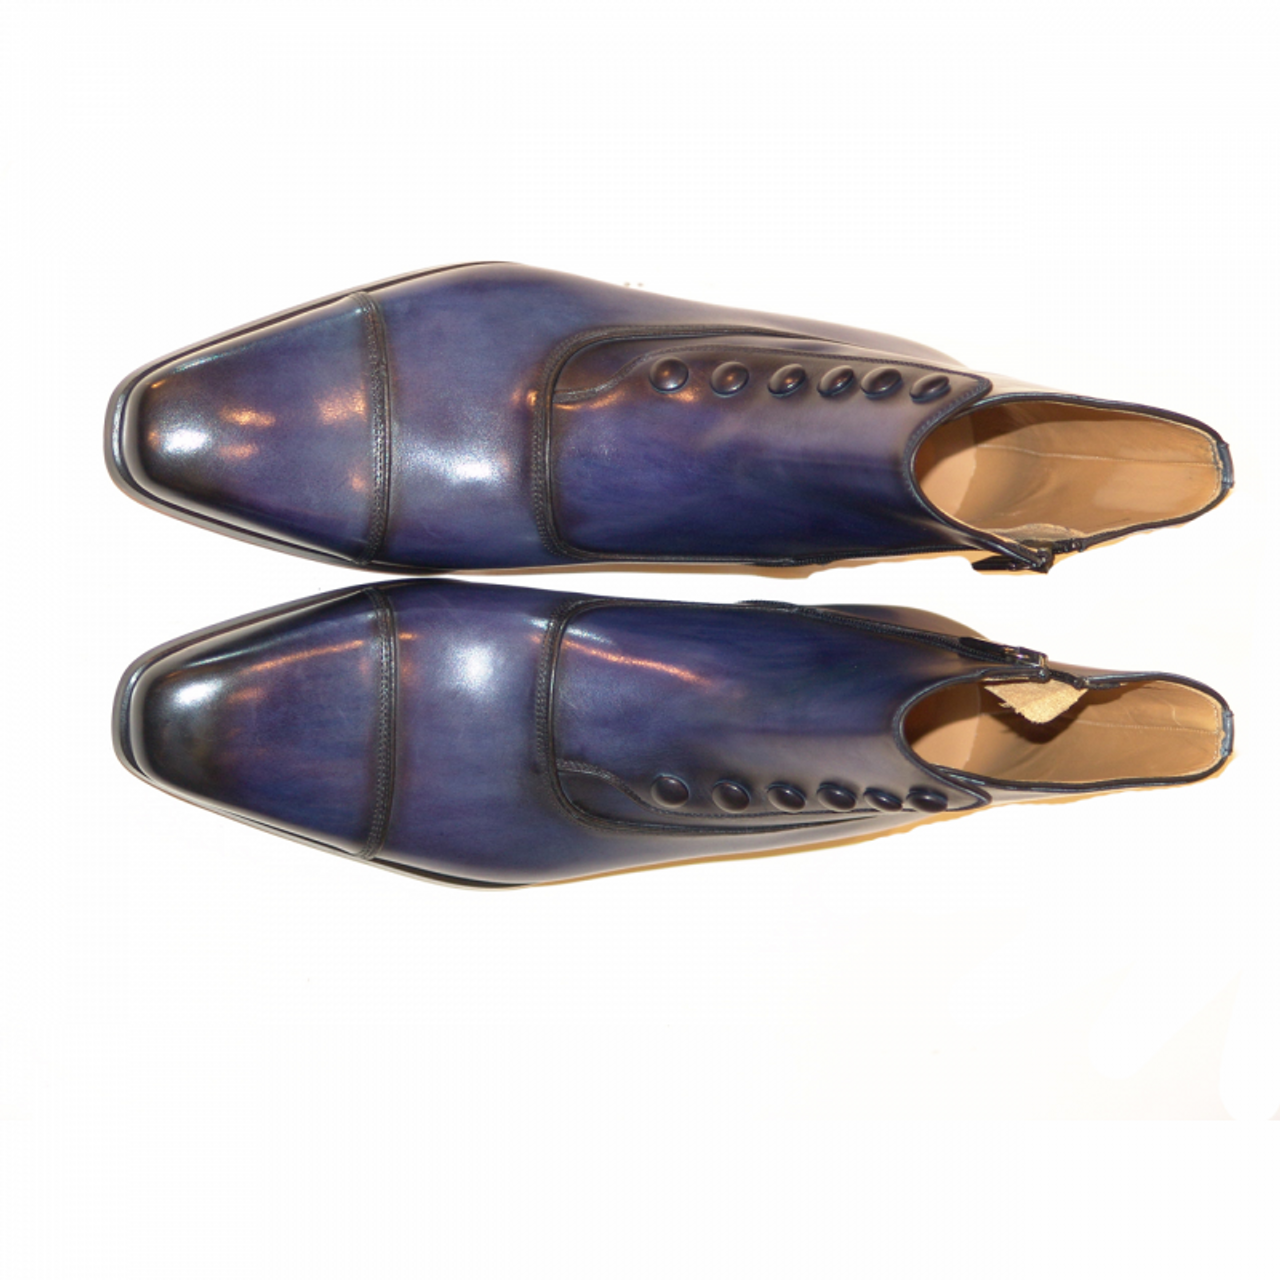 Magnanni Seleccion Collection 14430 Zipper Boot Oceano Blue 